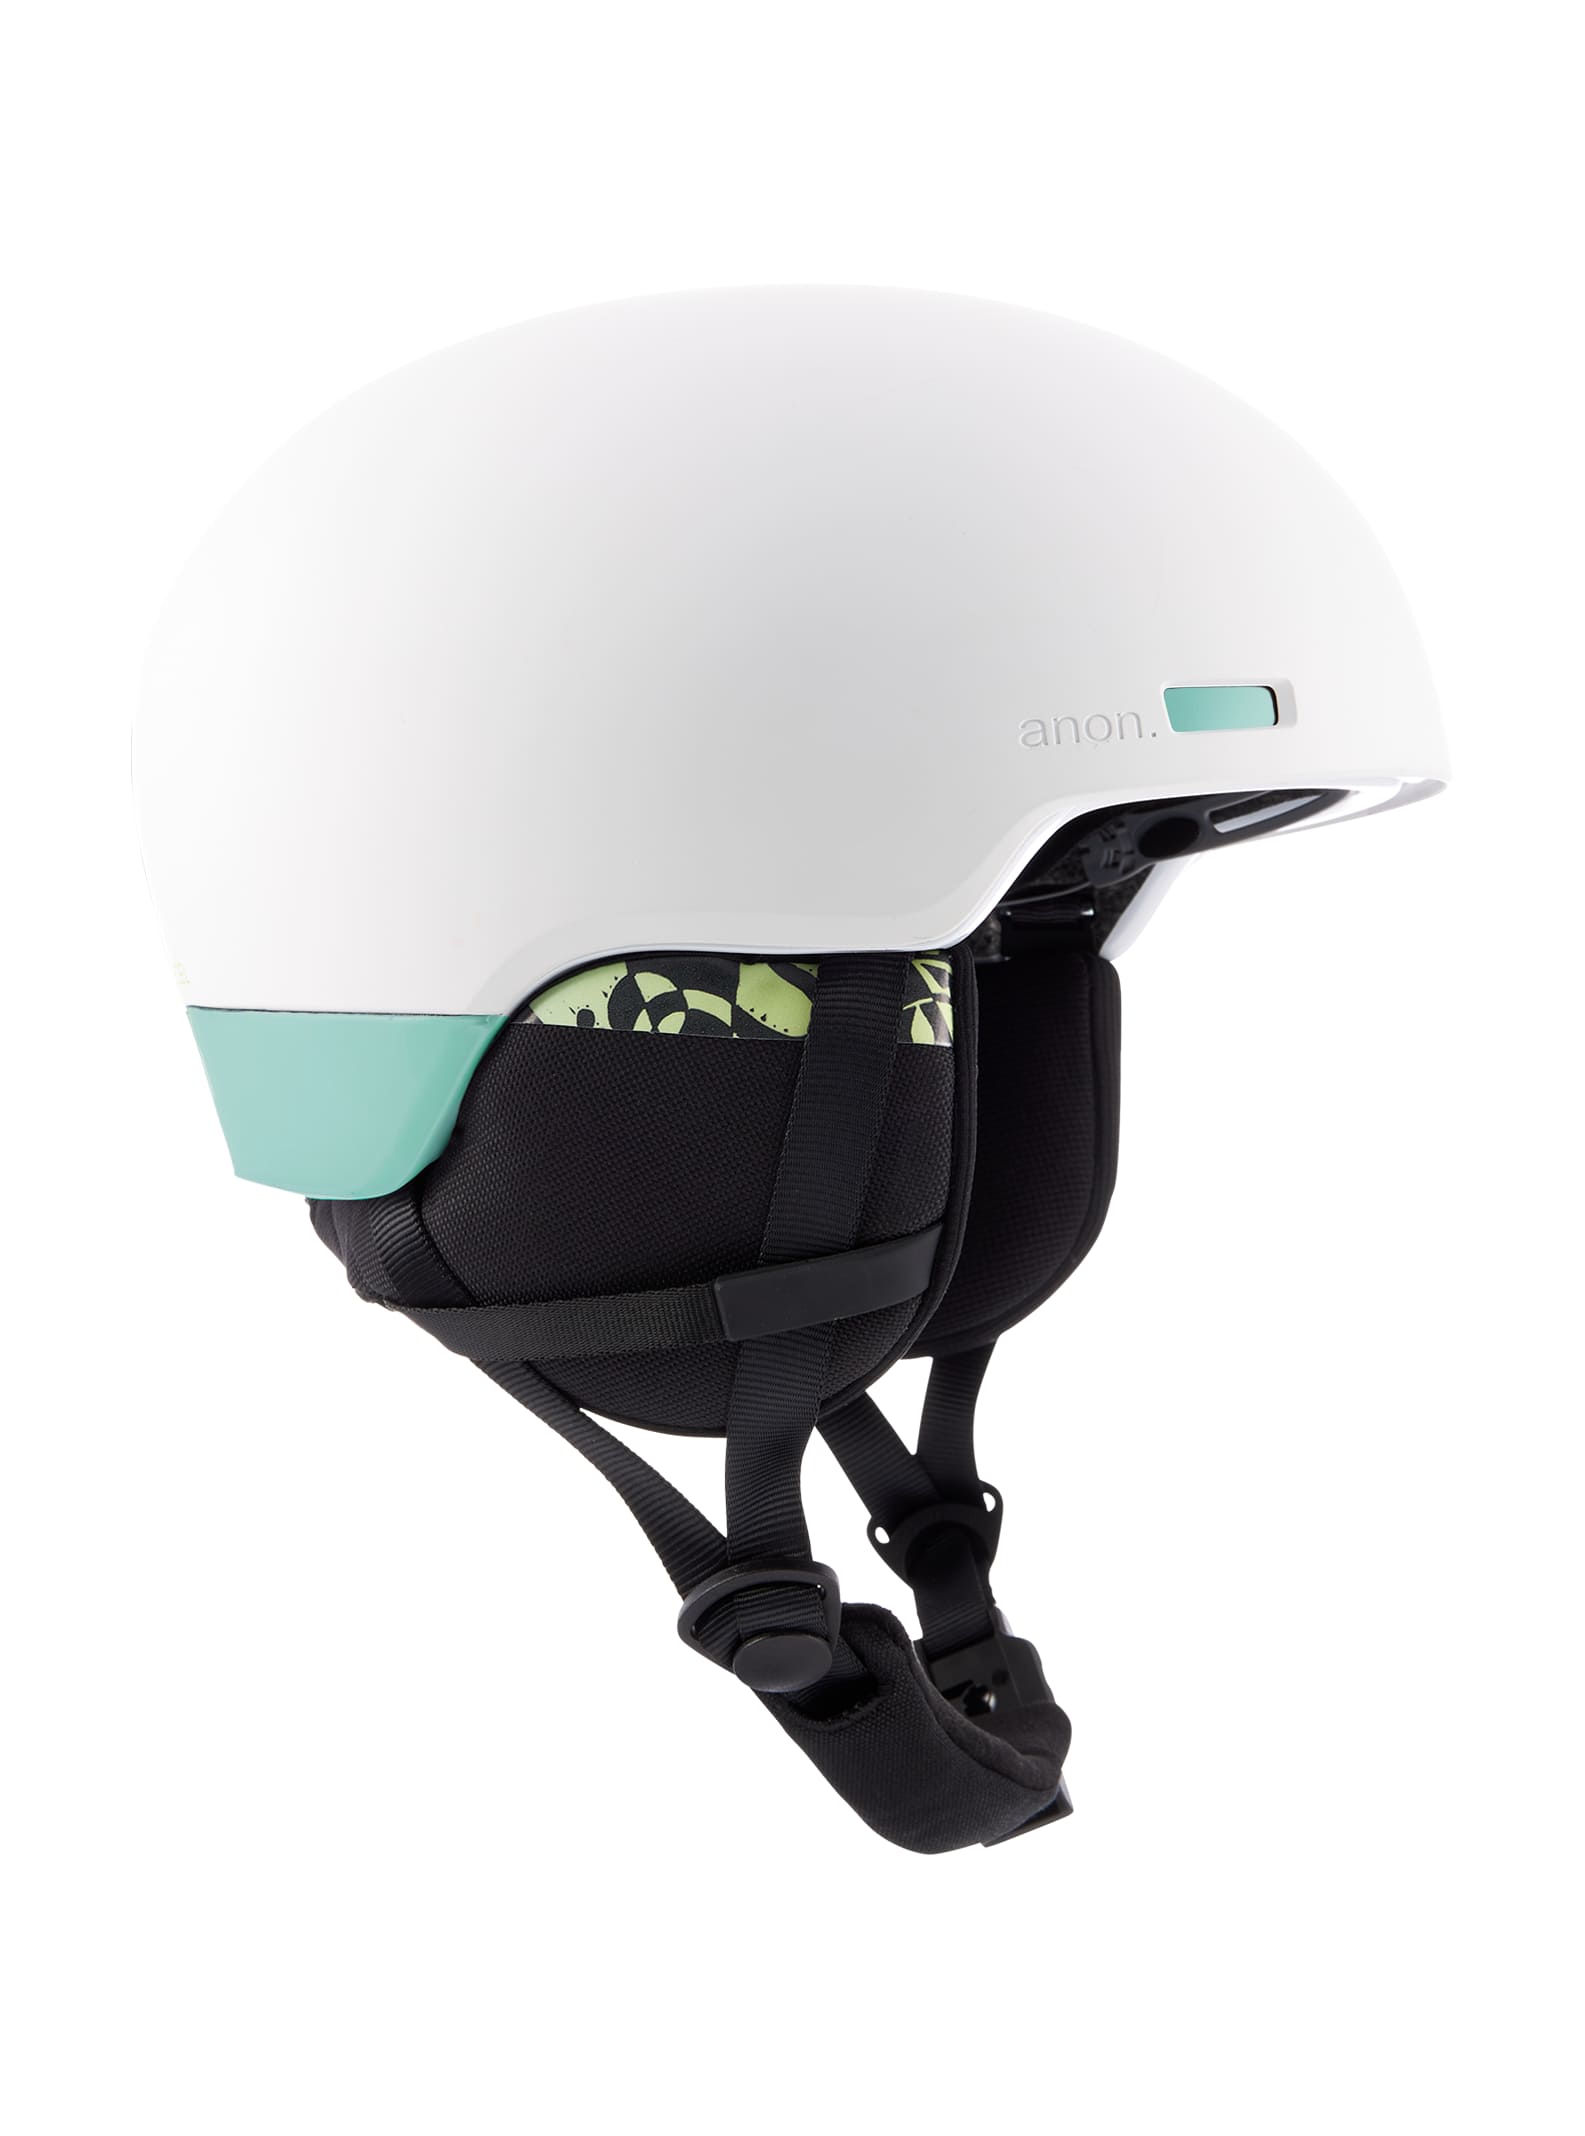 Anon Windham WaveCel Helmet | Burton.com Winter 2022 US